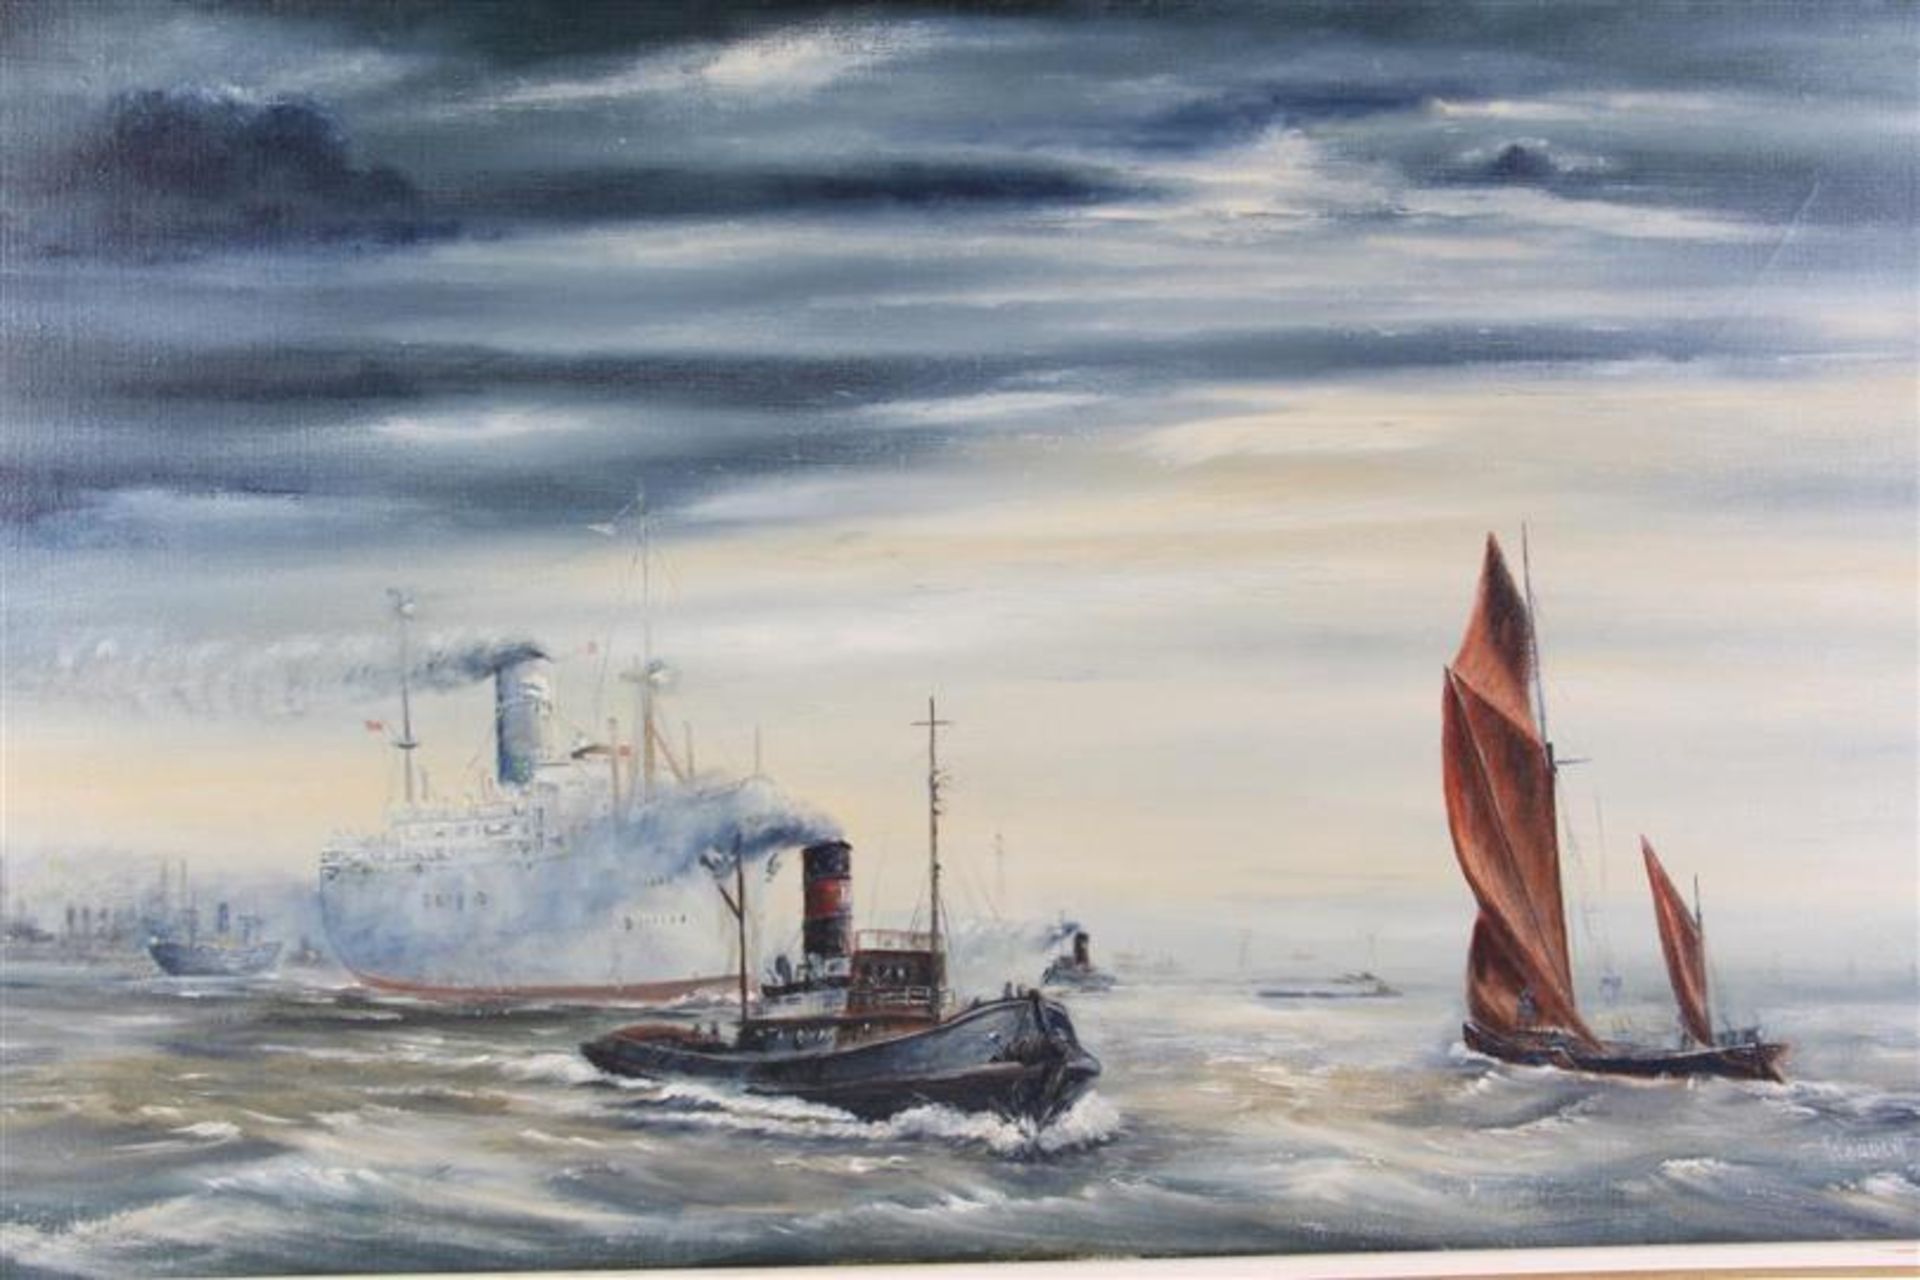 Schilderij op doek 'Scheepvaart', gesigneerd Warden '71. HxB: 44.5 x 75 cm. - Bild 2 aus 4